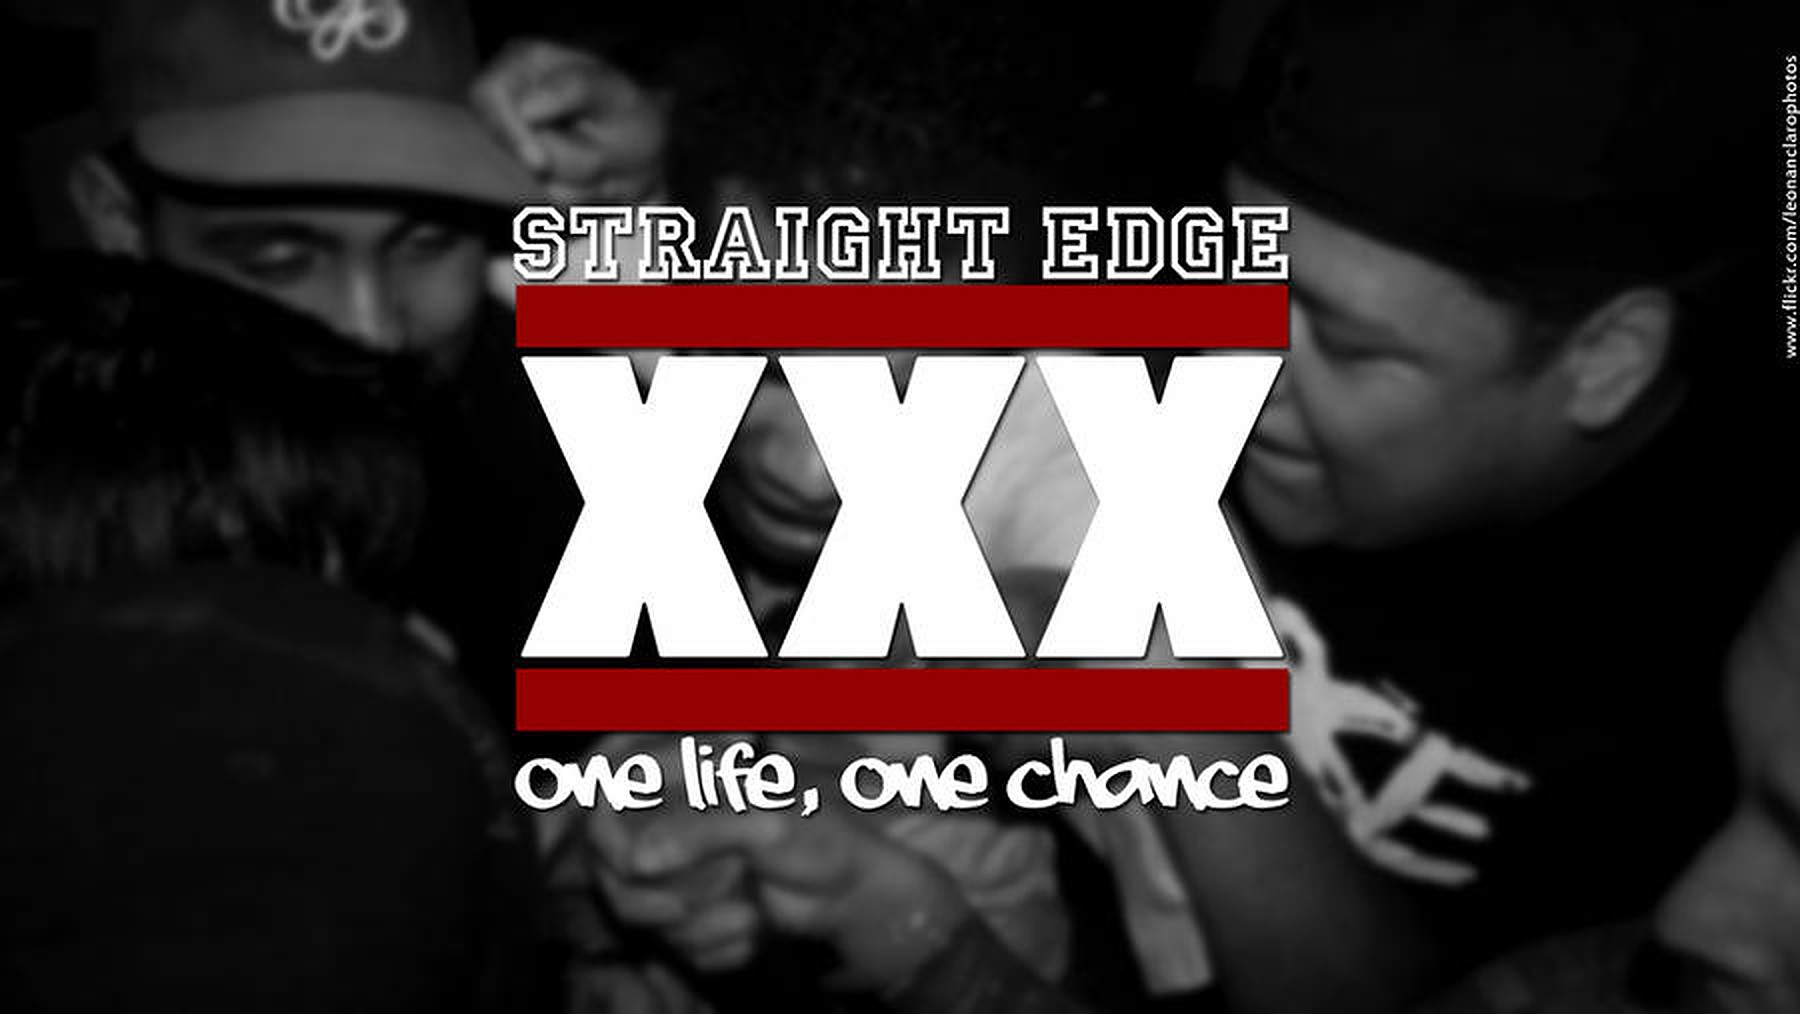 straight_edge_xxx_by_leonanclaro_d2j40rl-fullview.v1